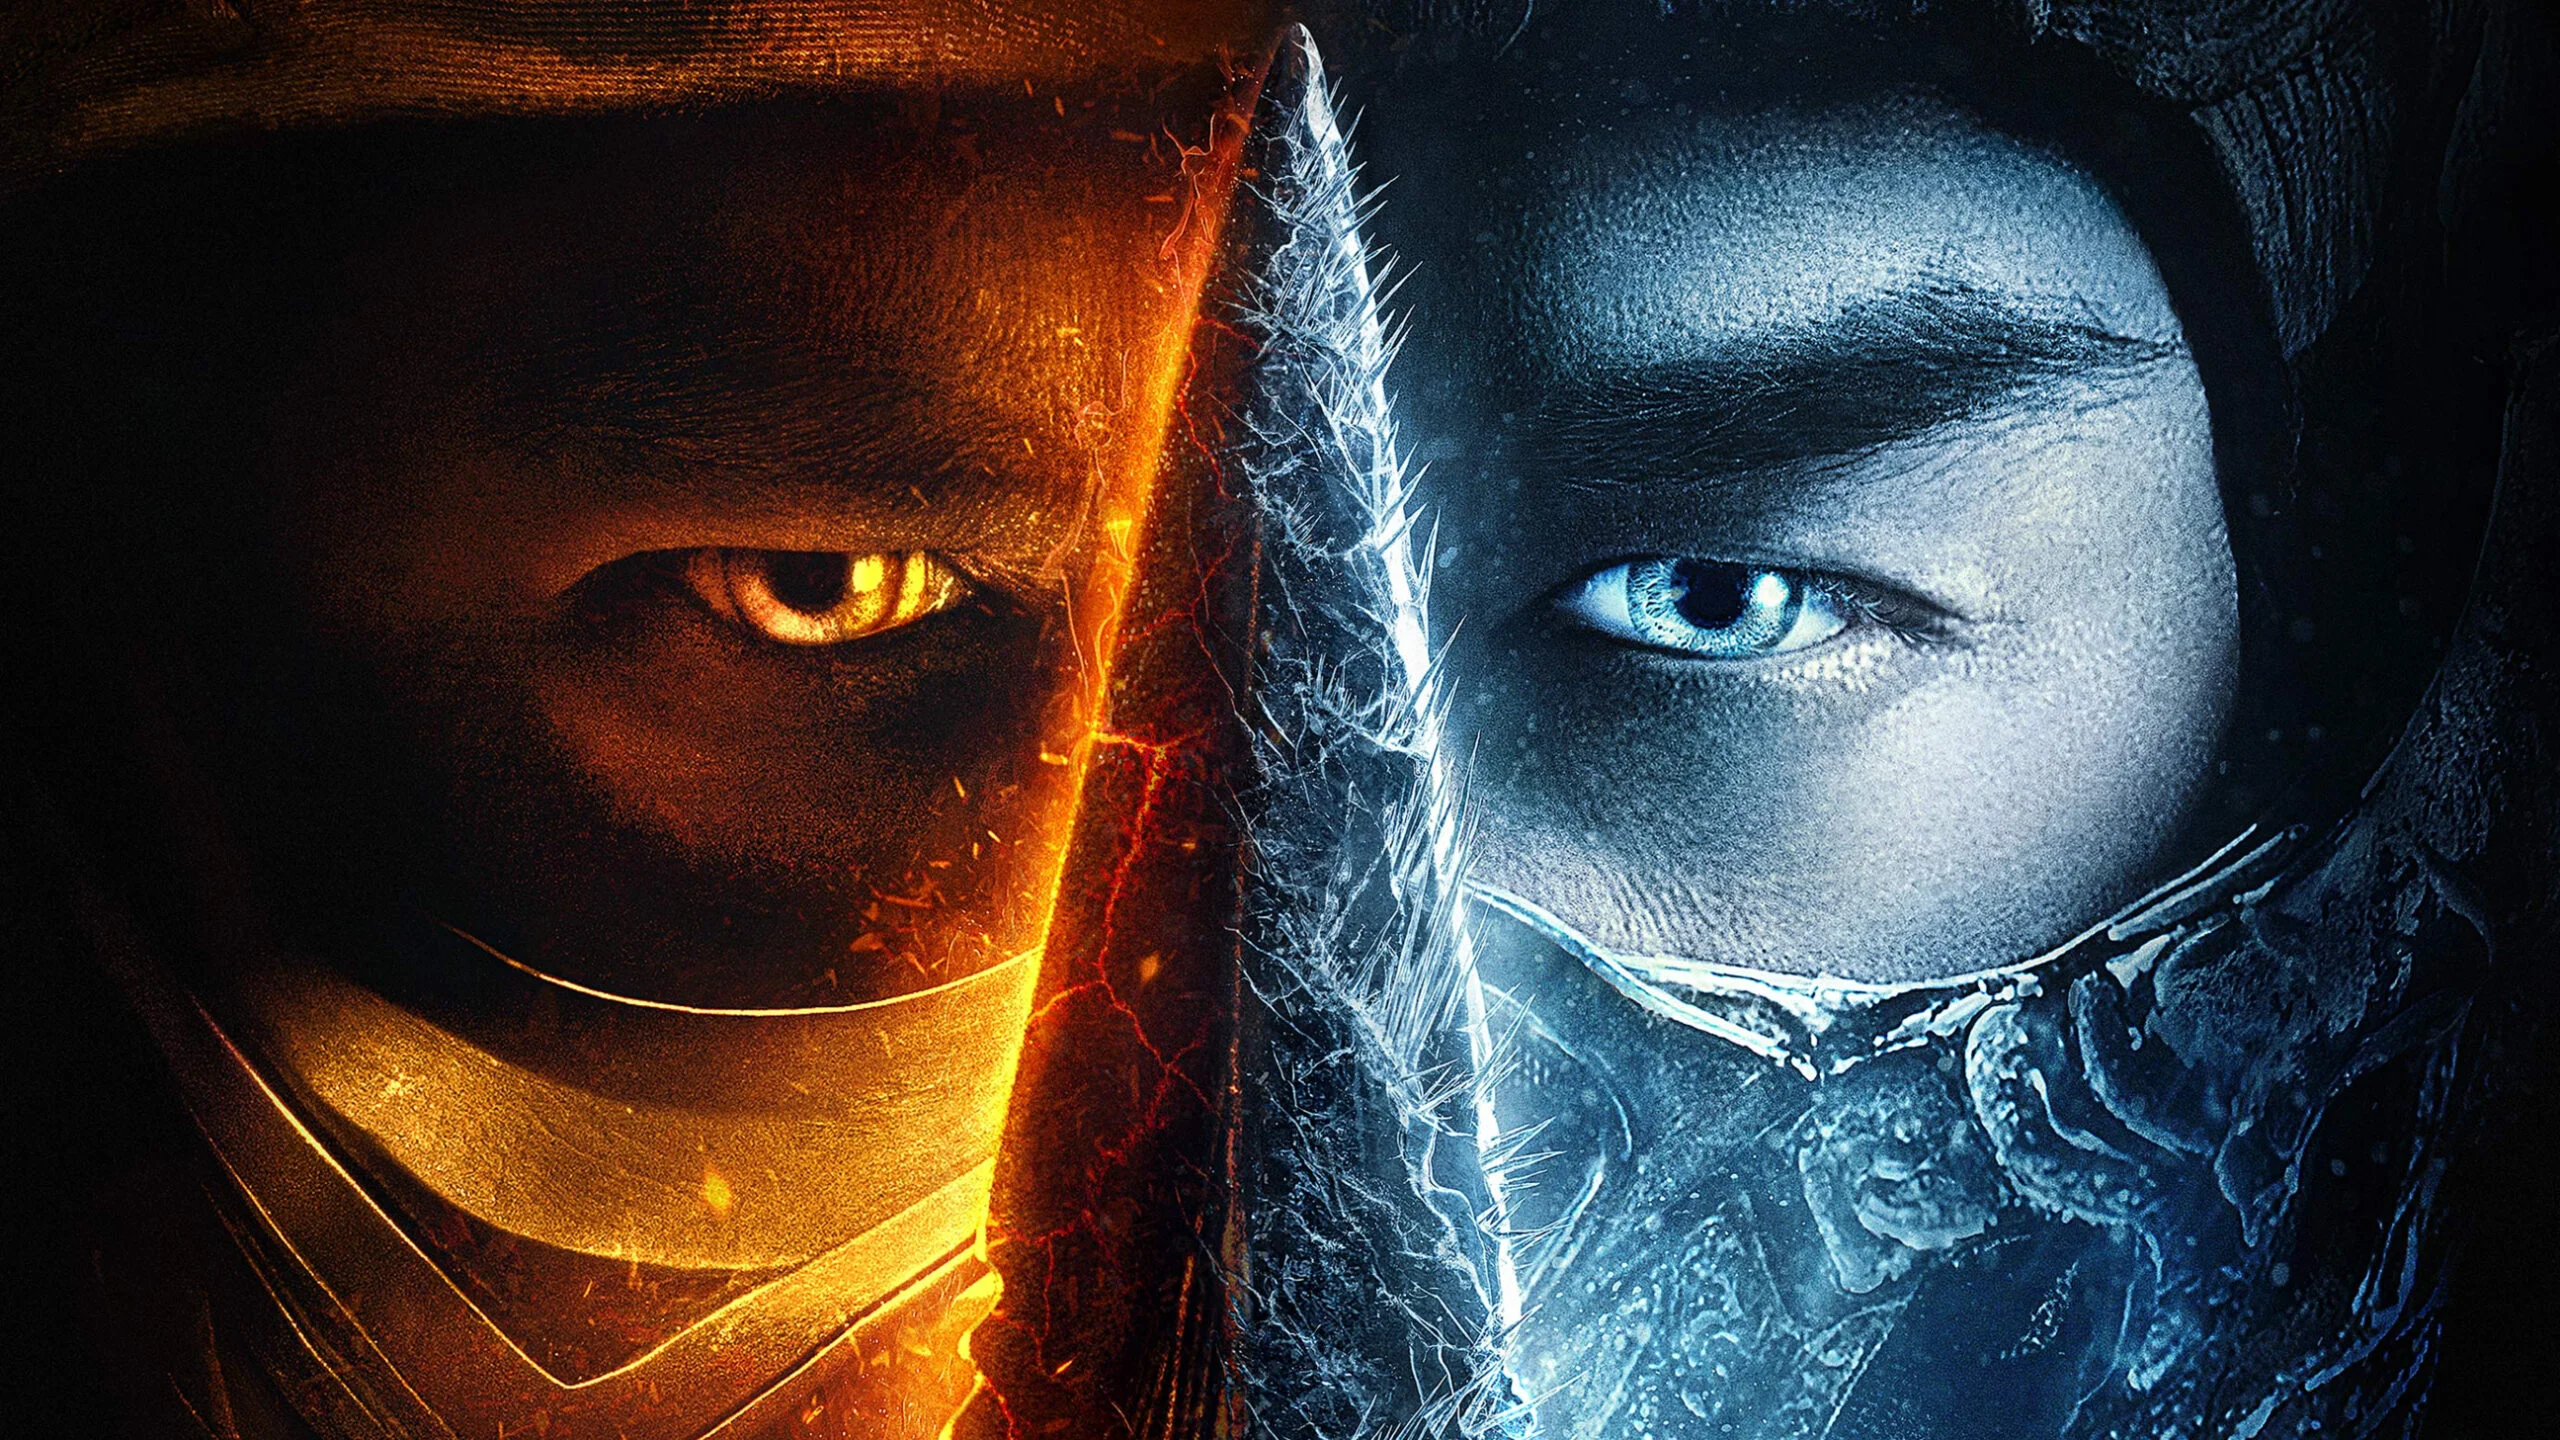 Качественный сценарий и ориентация на пожелания фанатов: чем собирается удивить сиквел Mortal Kombat?